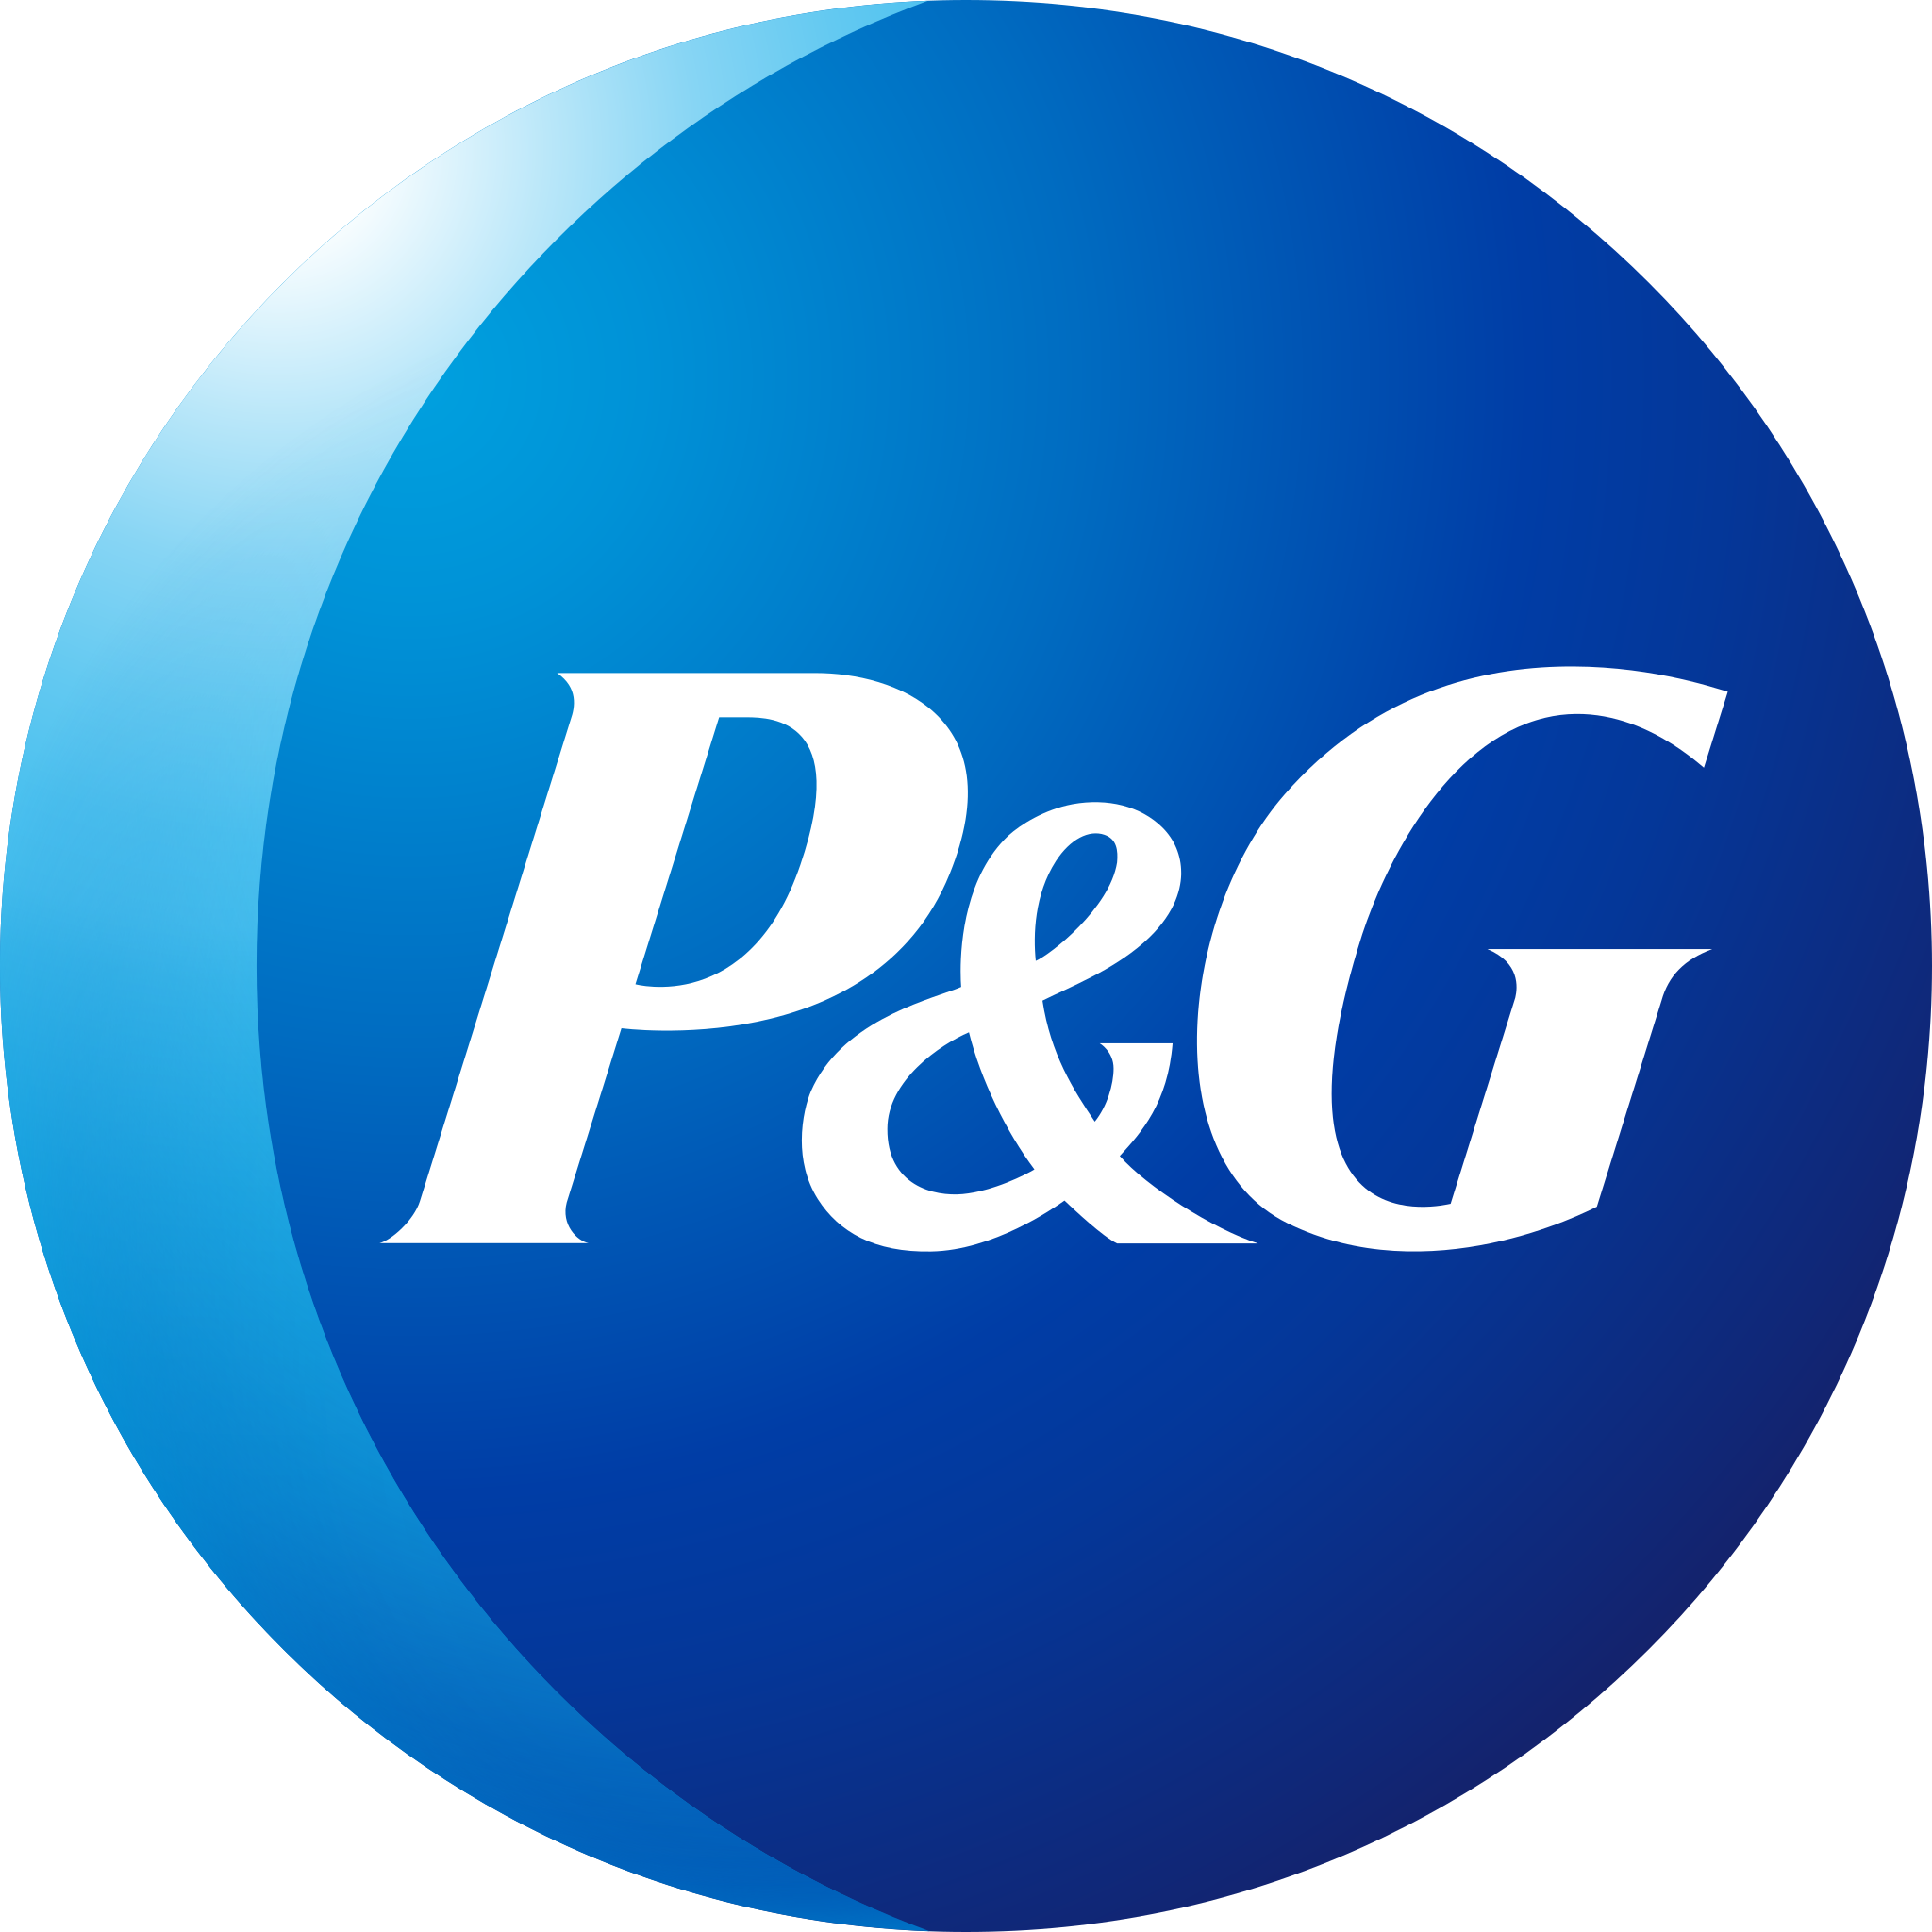 P&g1